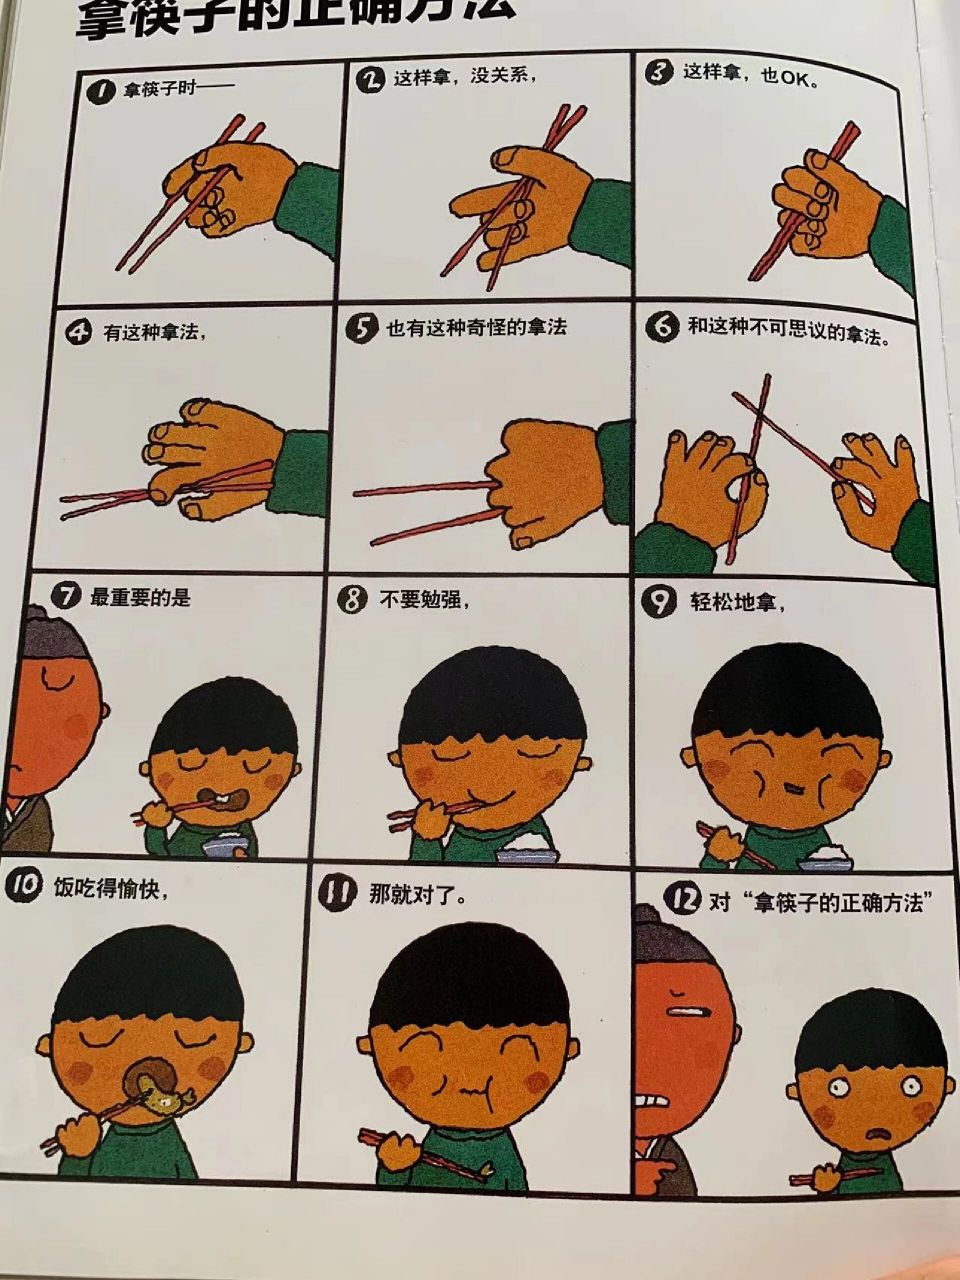 咬筷子的正确方法图片图片